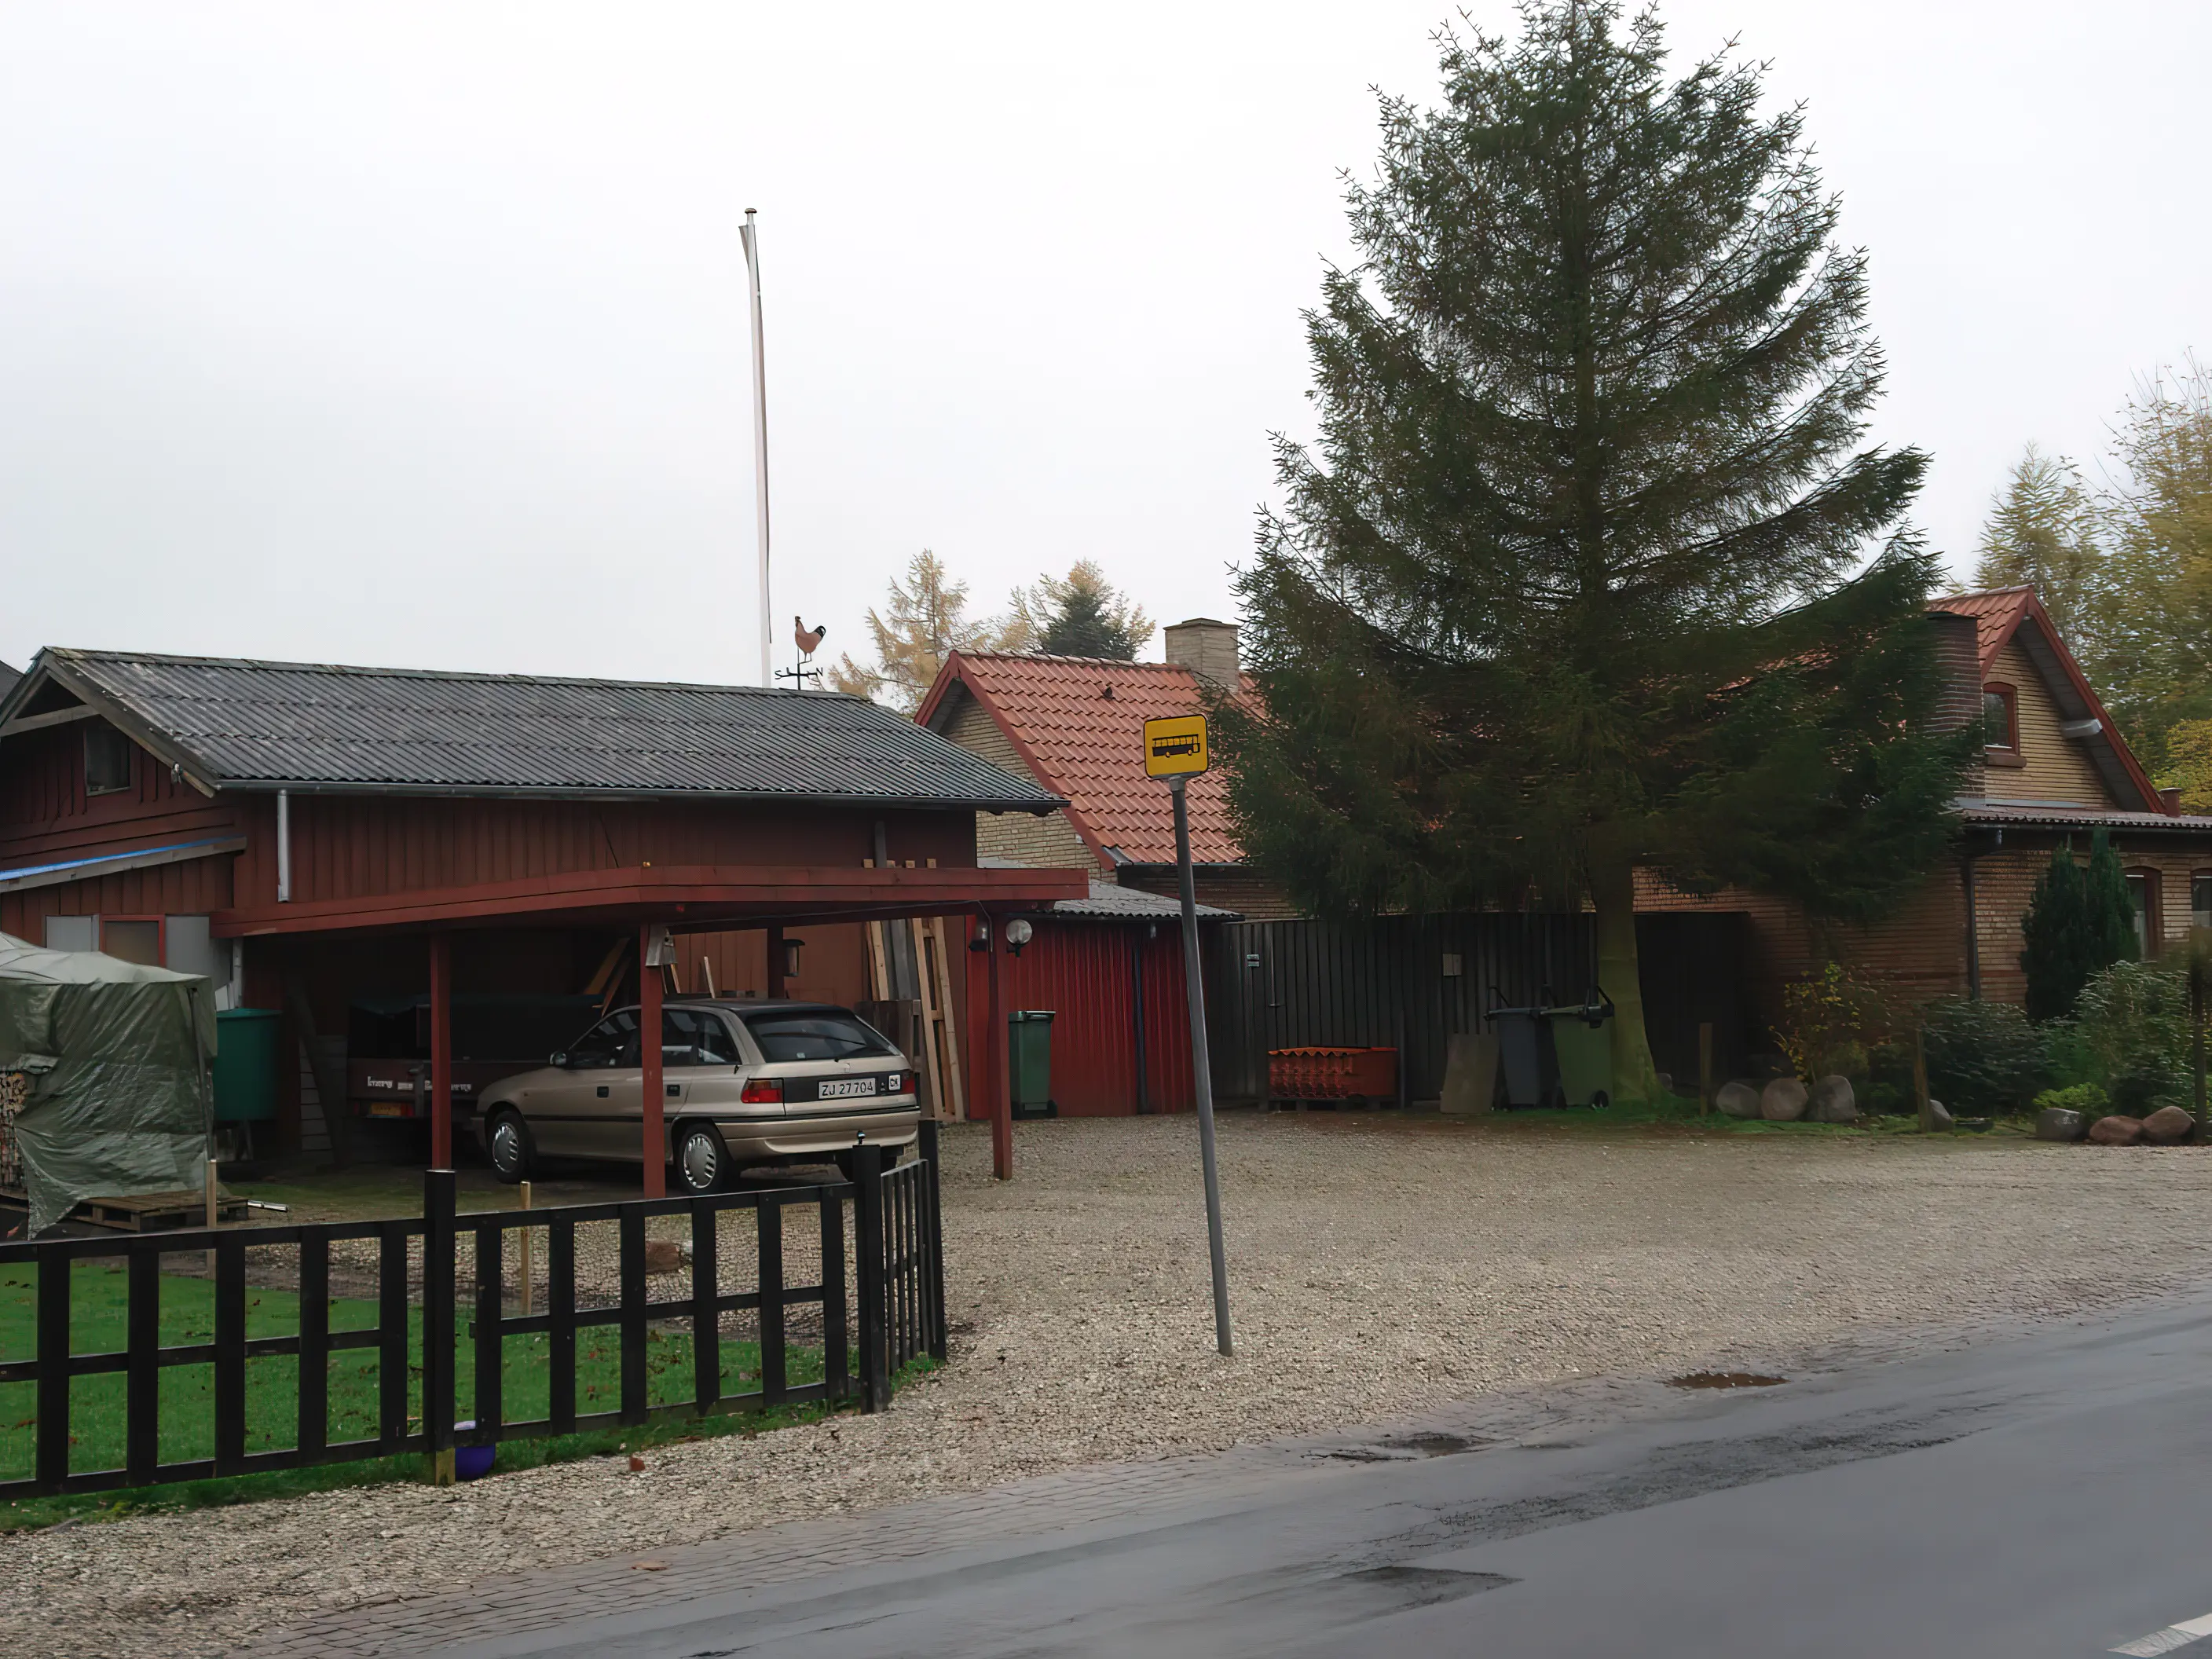 Billede af Fjellerup Stations pakhus, som er den røde bygning til venstre i billedet.